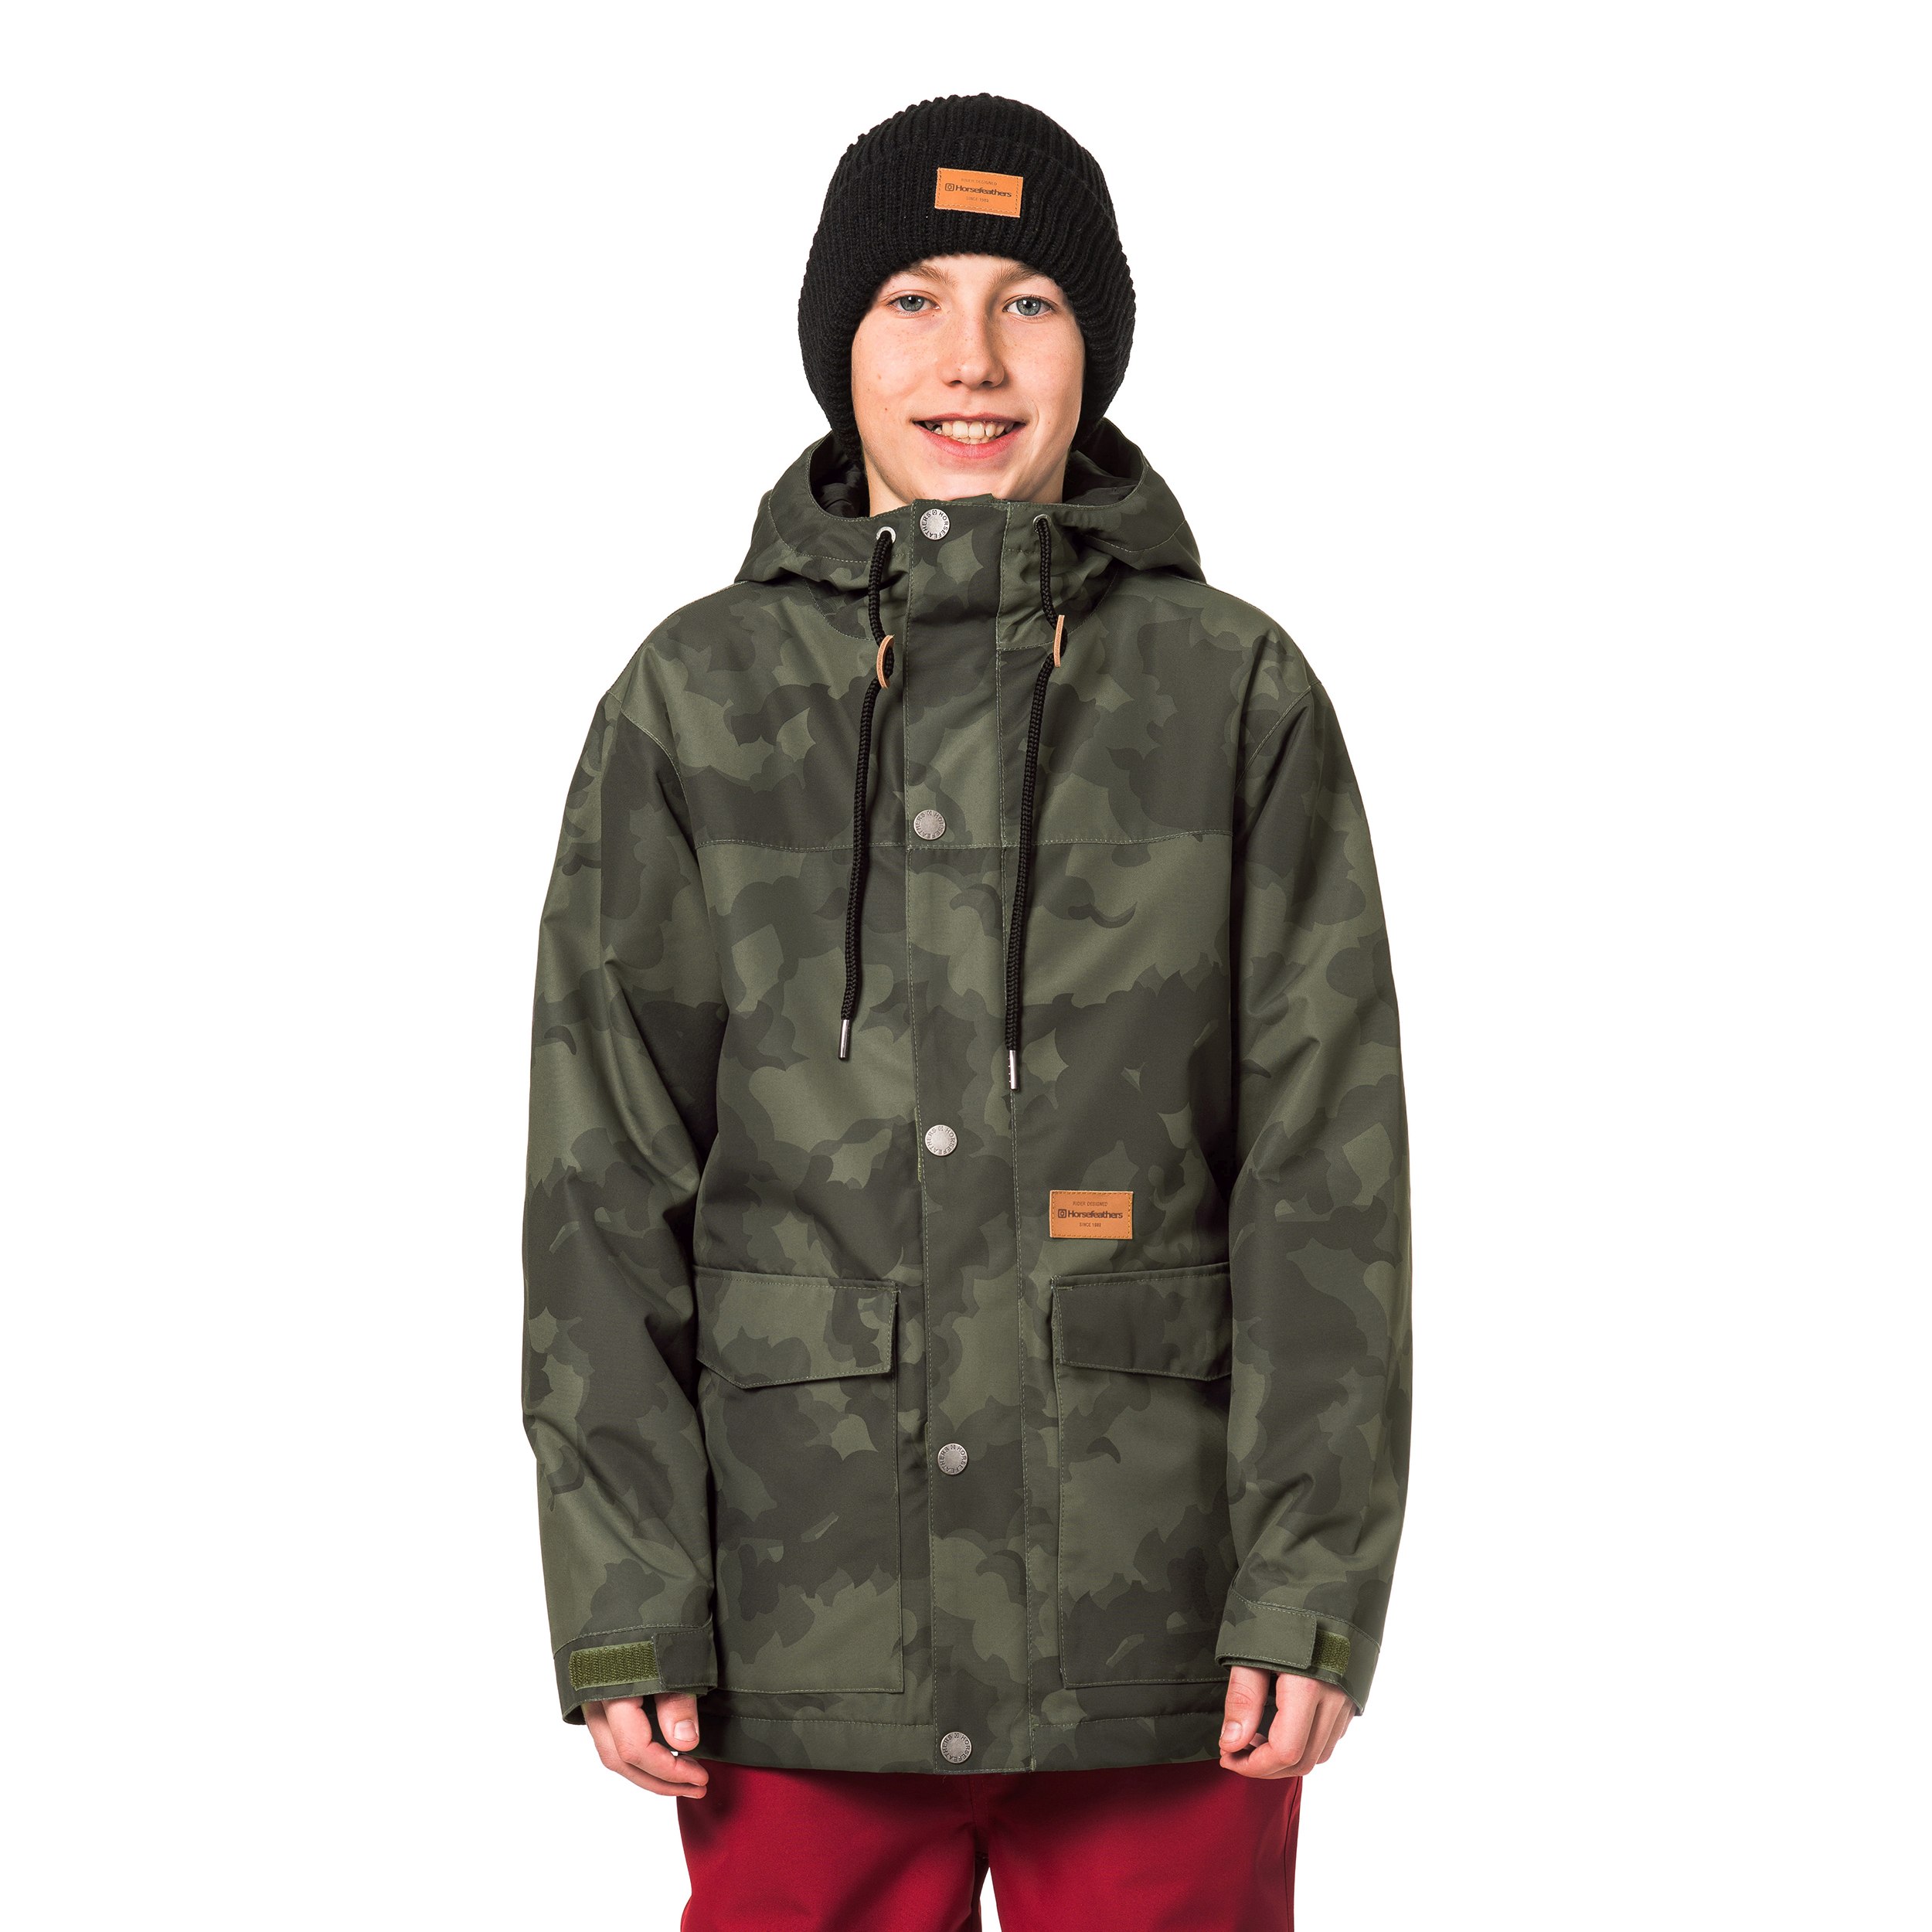 Chlapčenská lyžiarska/snowboardová bunda